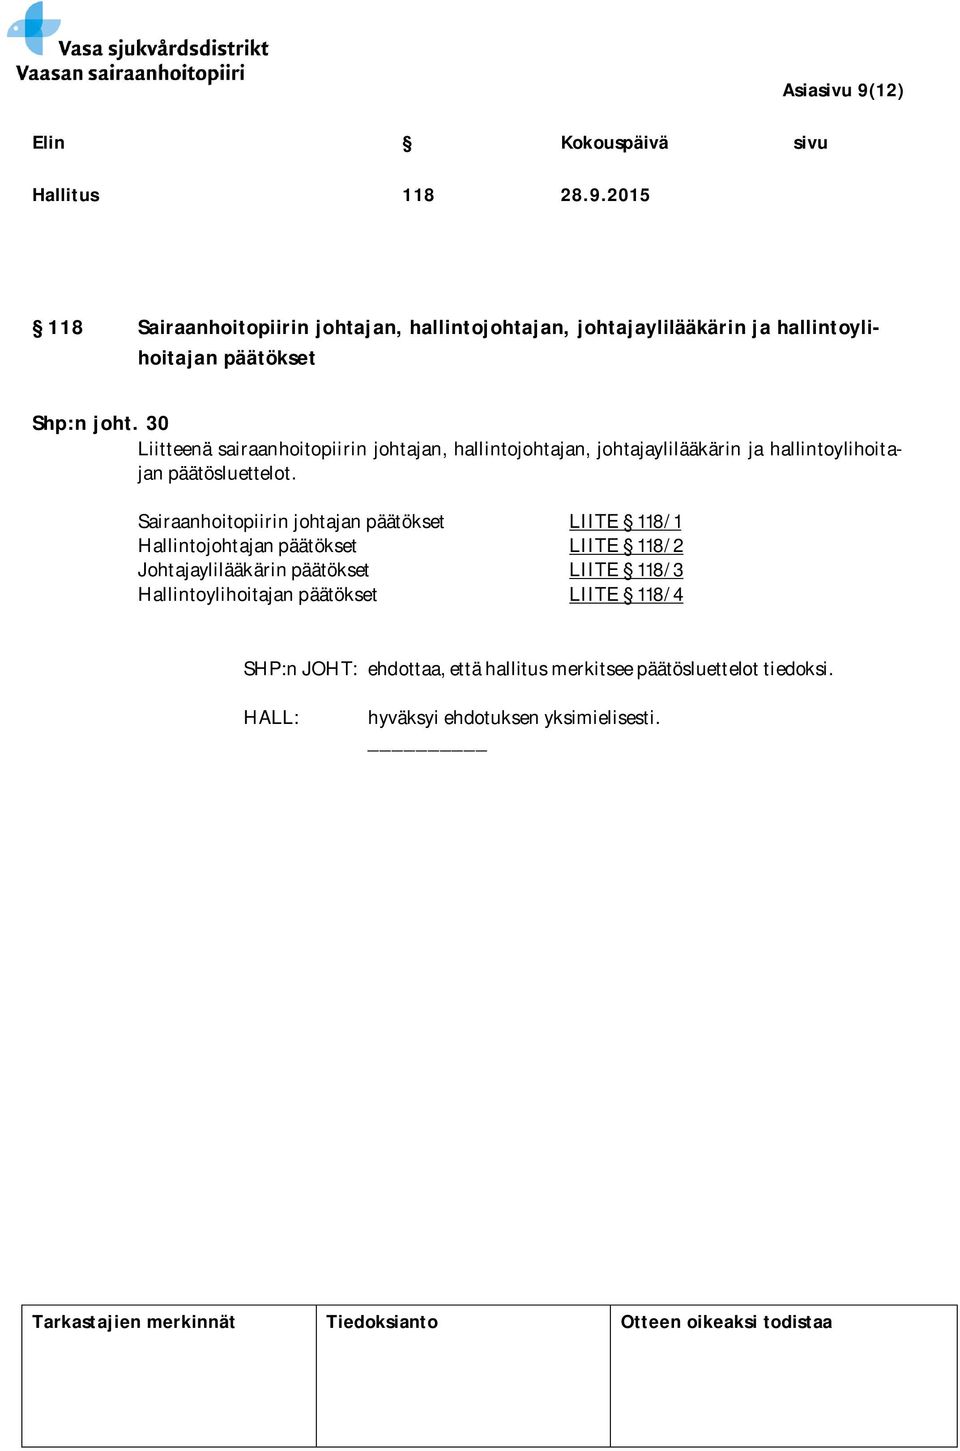 Sairaanhoitopiirin johtajan päätökset LIITE 118/1 Hallintojohtajan päätökset LIITE 118/2 Johtajaylilääkärin päätökset LIITE 118/3